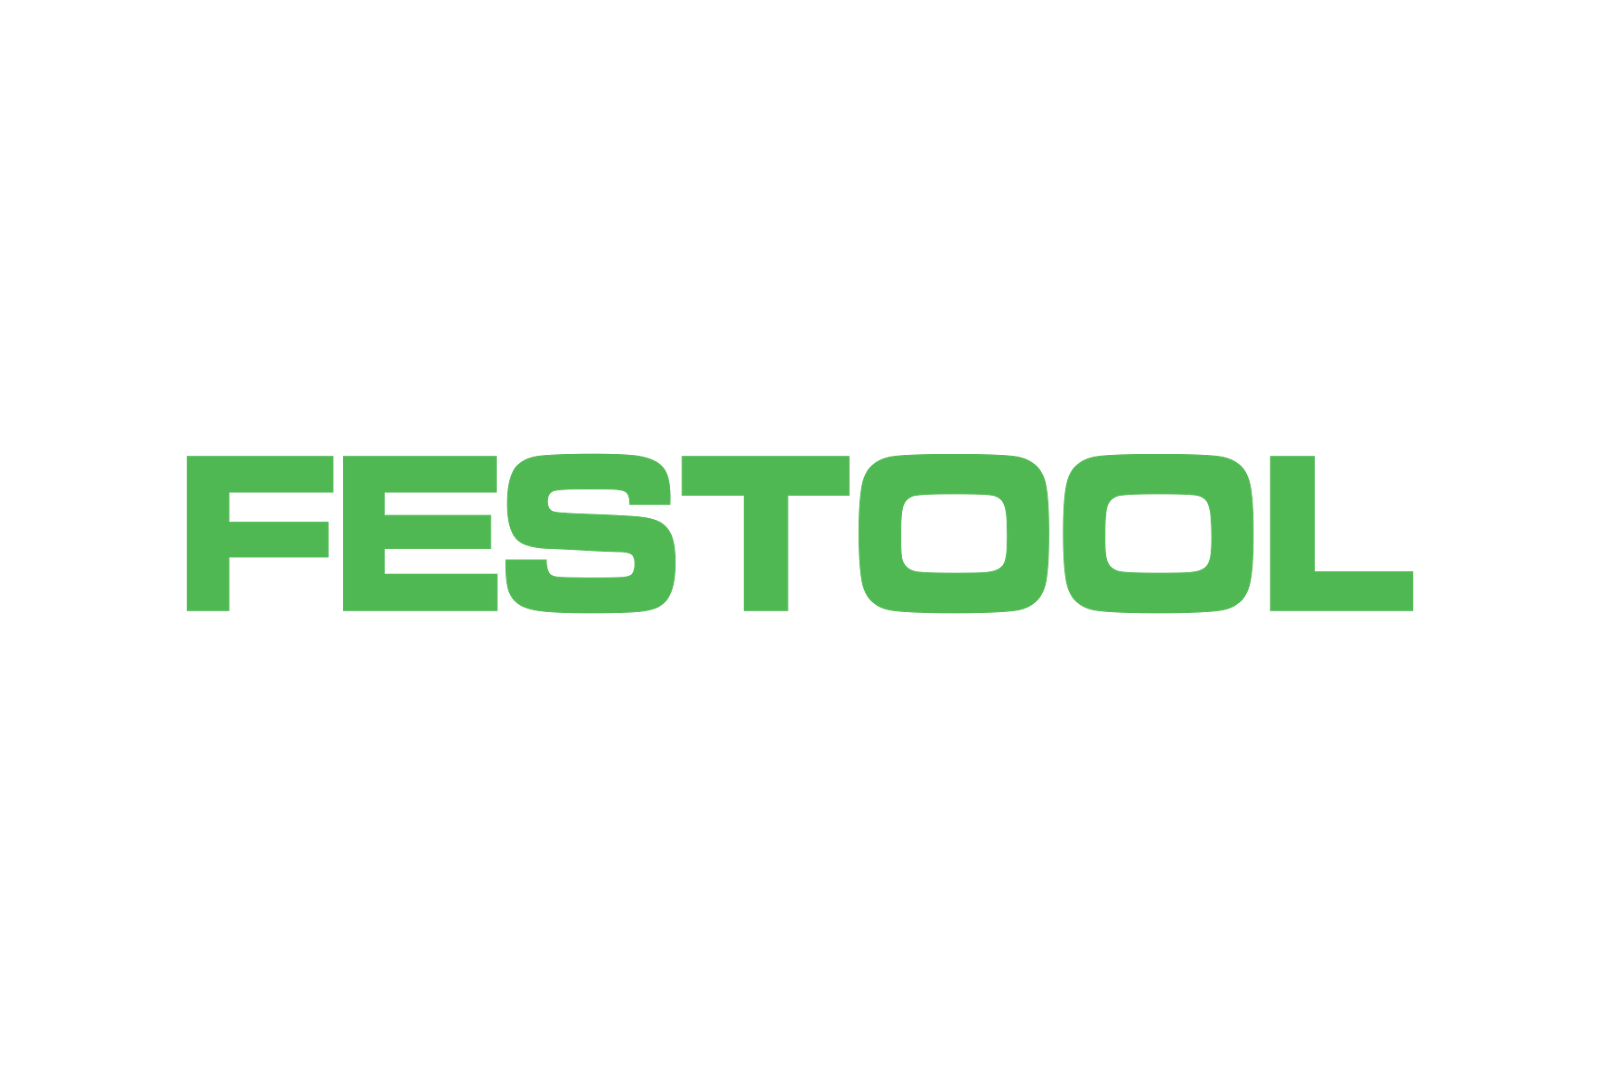 Festool 488899 Base Plate And Sanding Pad Set for DX 93 Sander